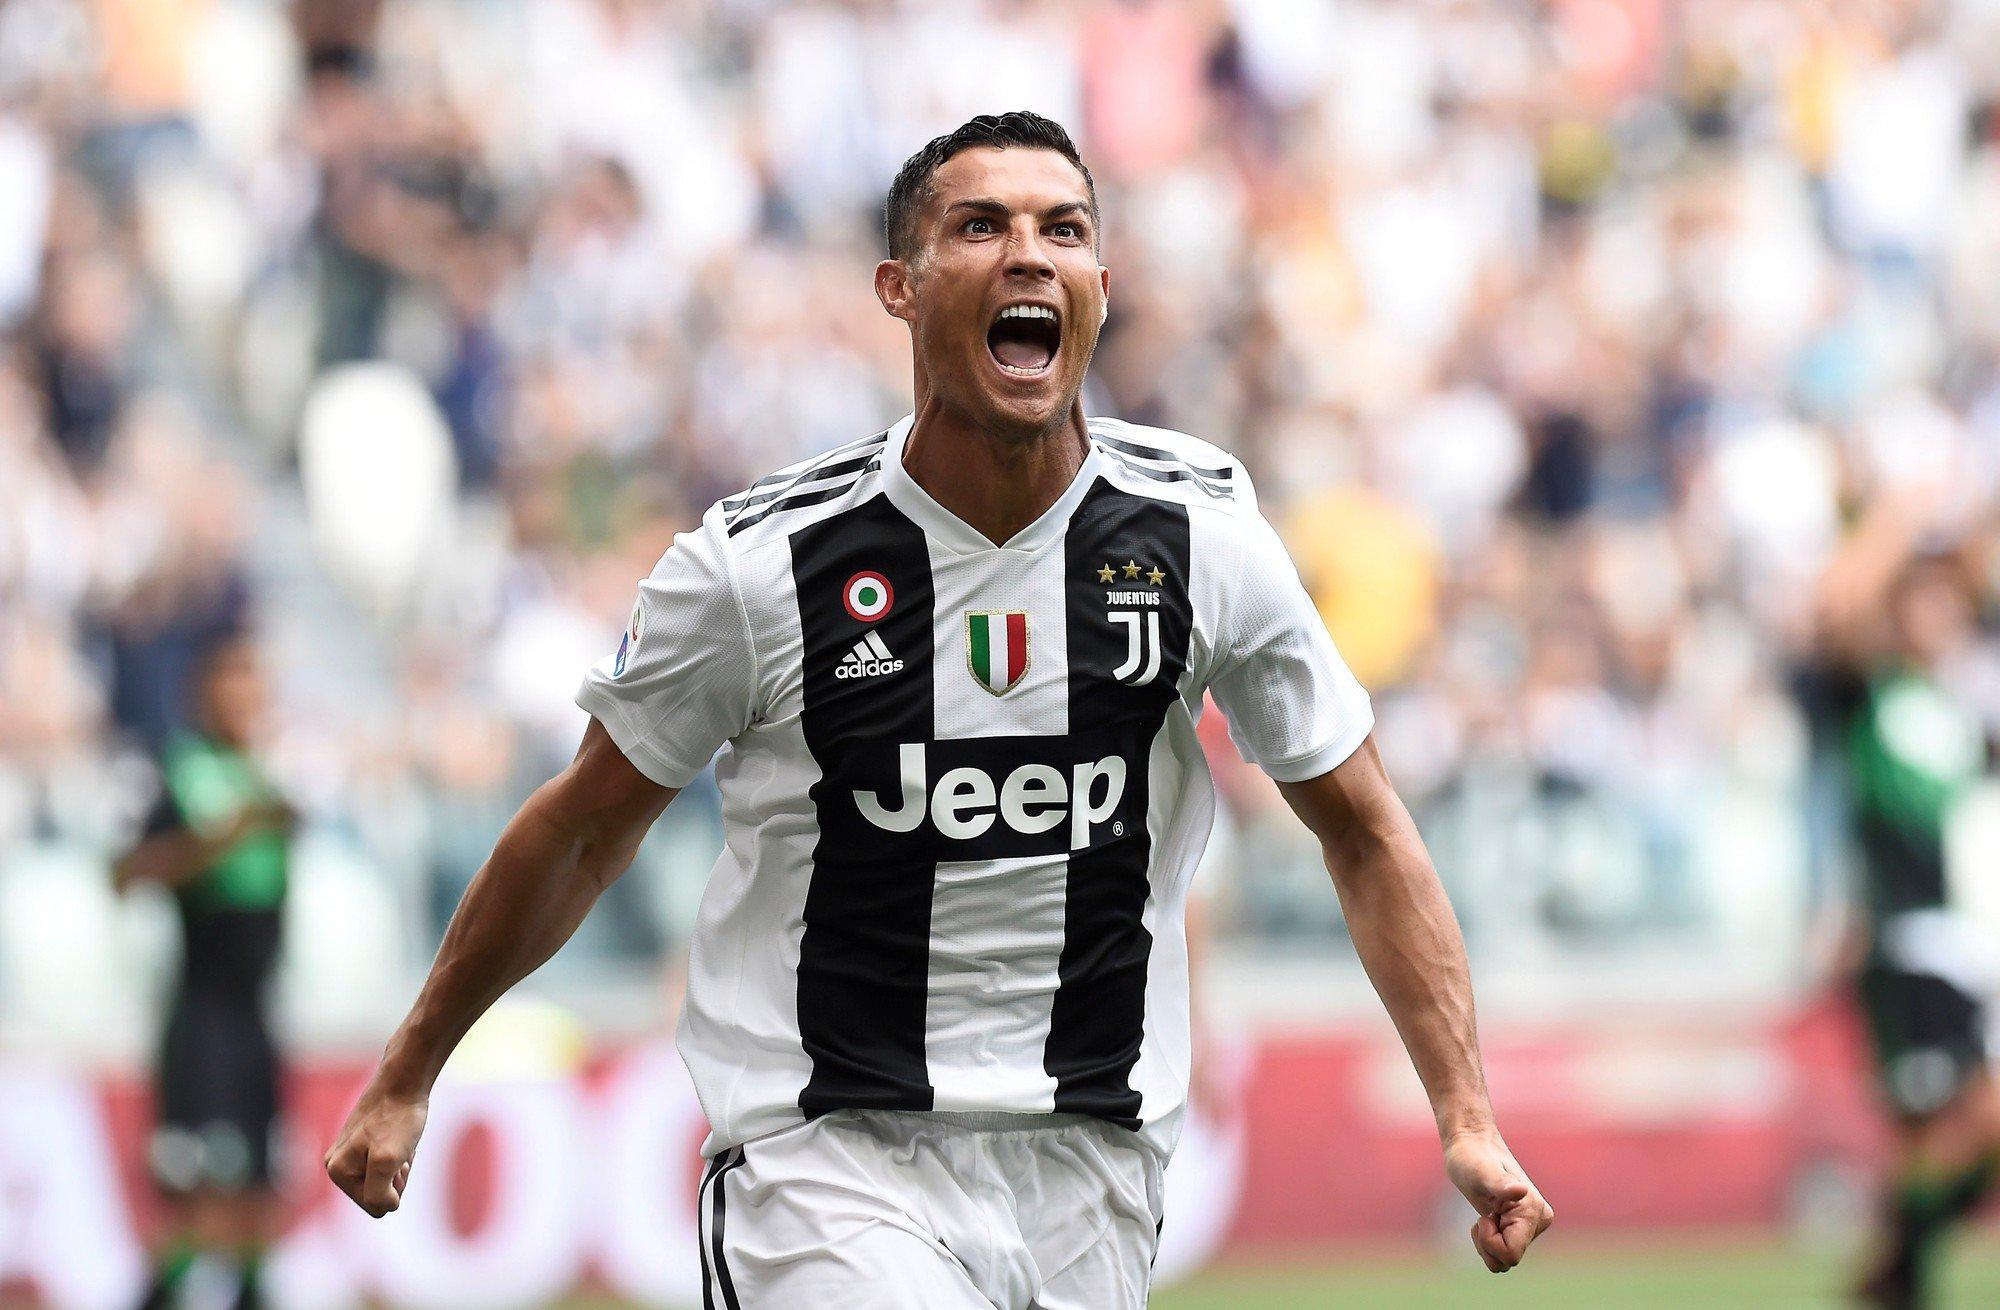 Ronaldo nhận được nhiều sự quan tâm của các CLB khi được cho là muốn rời khỏi Juventus trong kỳ chuyển nhượng vào mùa Hè